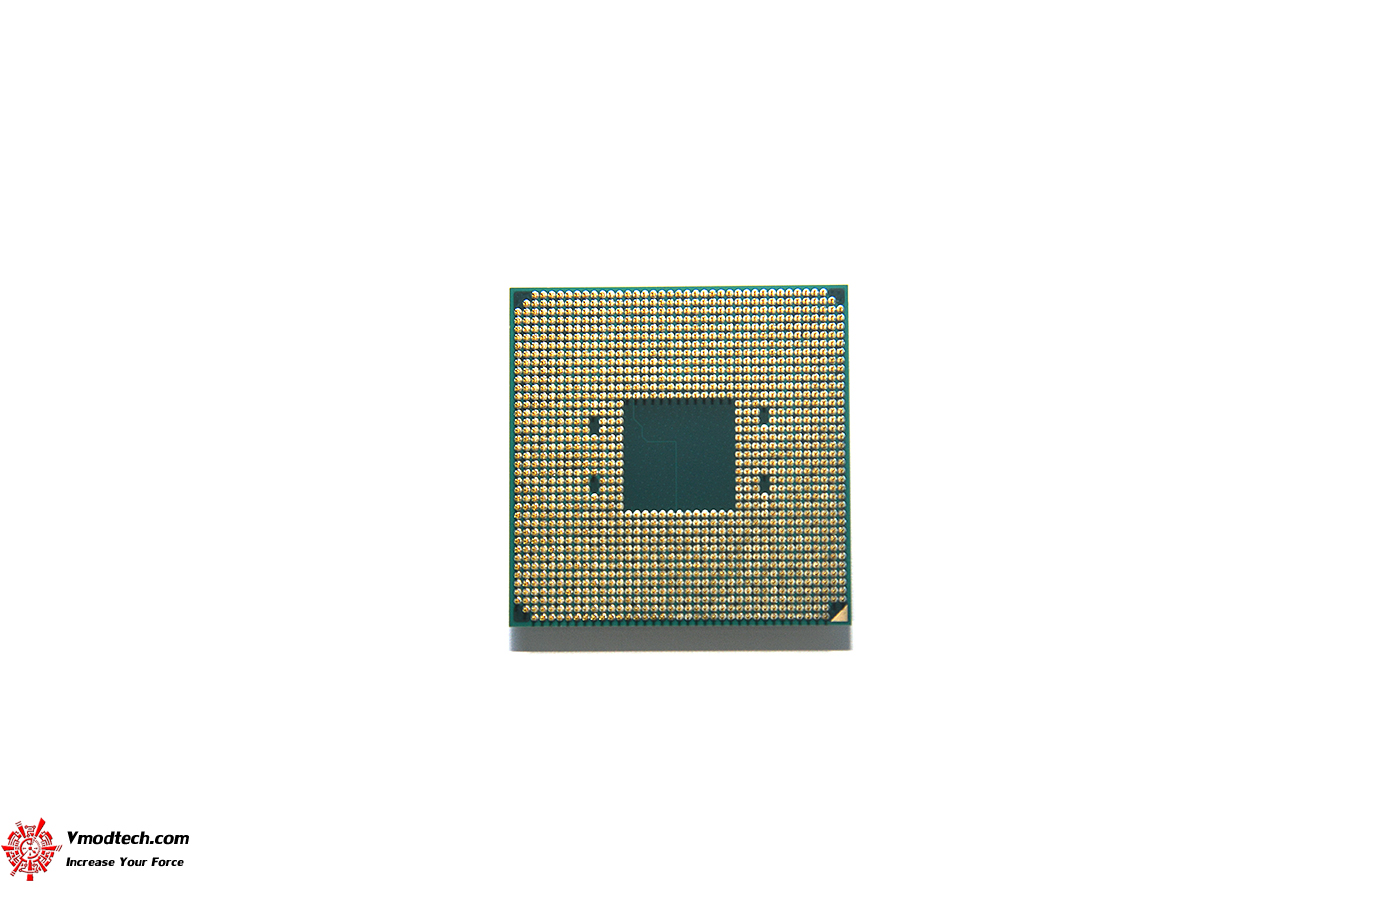 หน้าที่ 1 - AMD RYZEN 7 PRO 4750G PROCESSOR REVIEW | Vmodtech.com